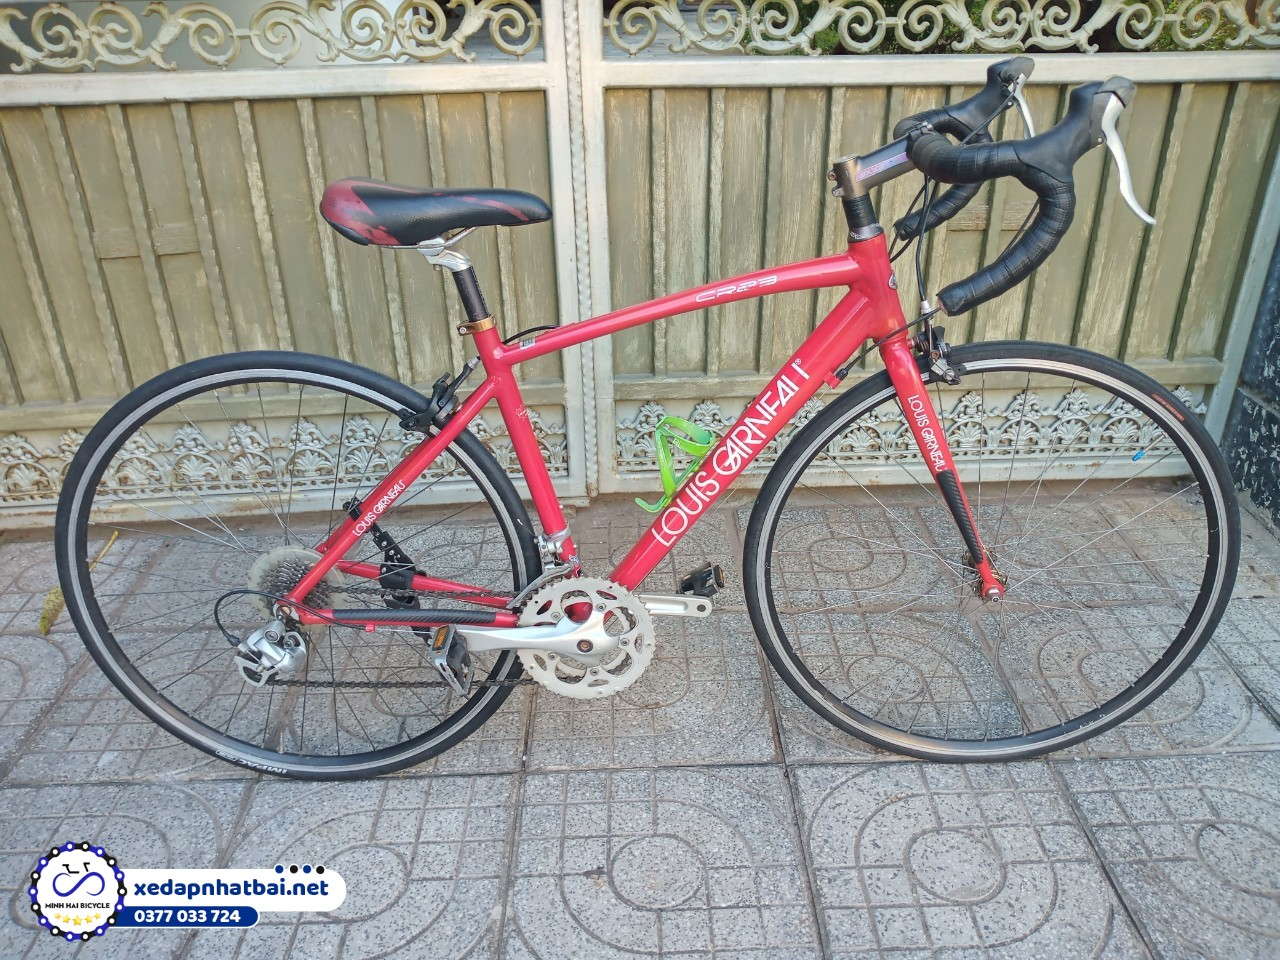 Nên mua xe đạp nào đi trong thành phố? Xe đạp Louis Garneau màu đỏ 